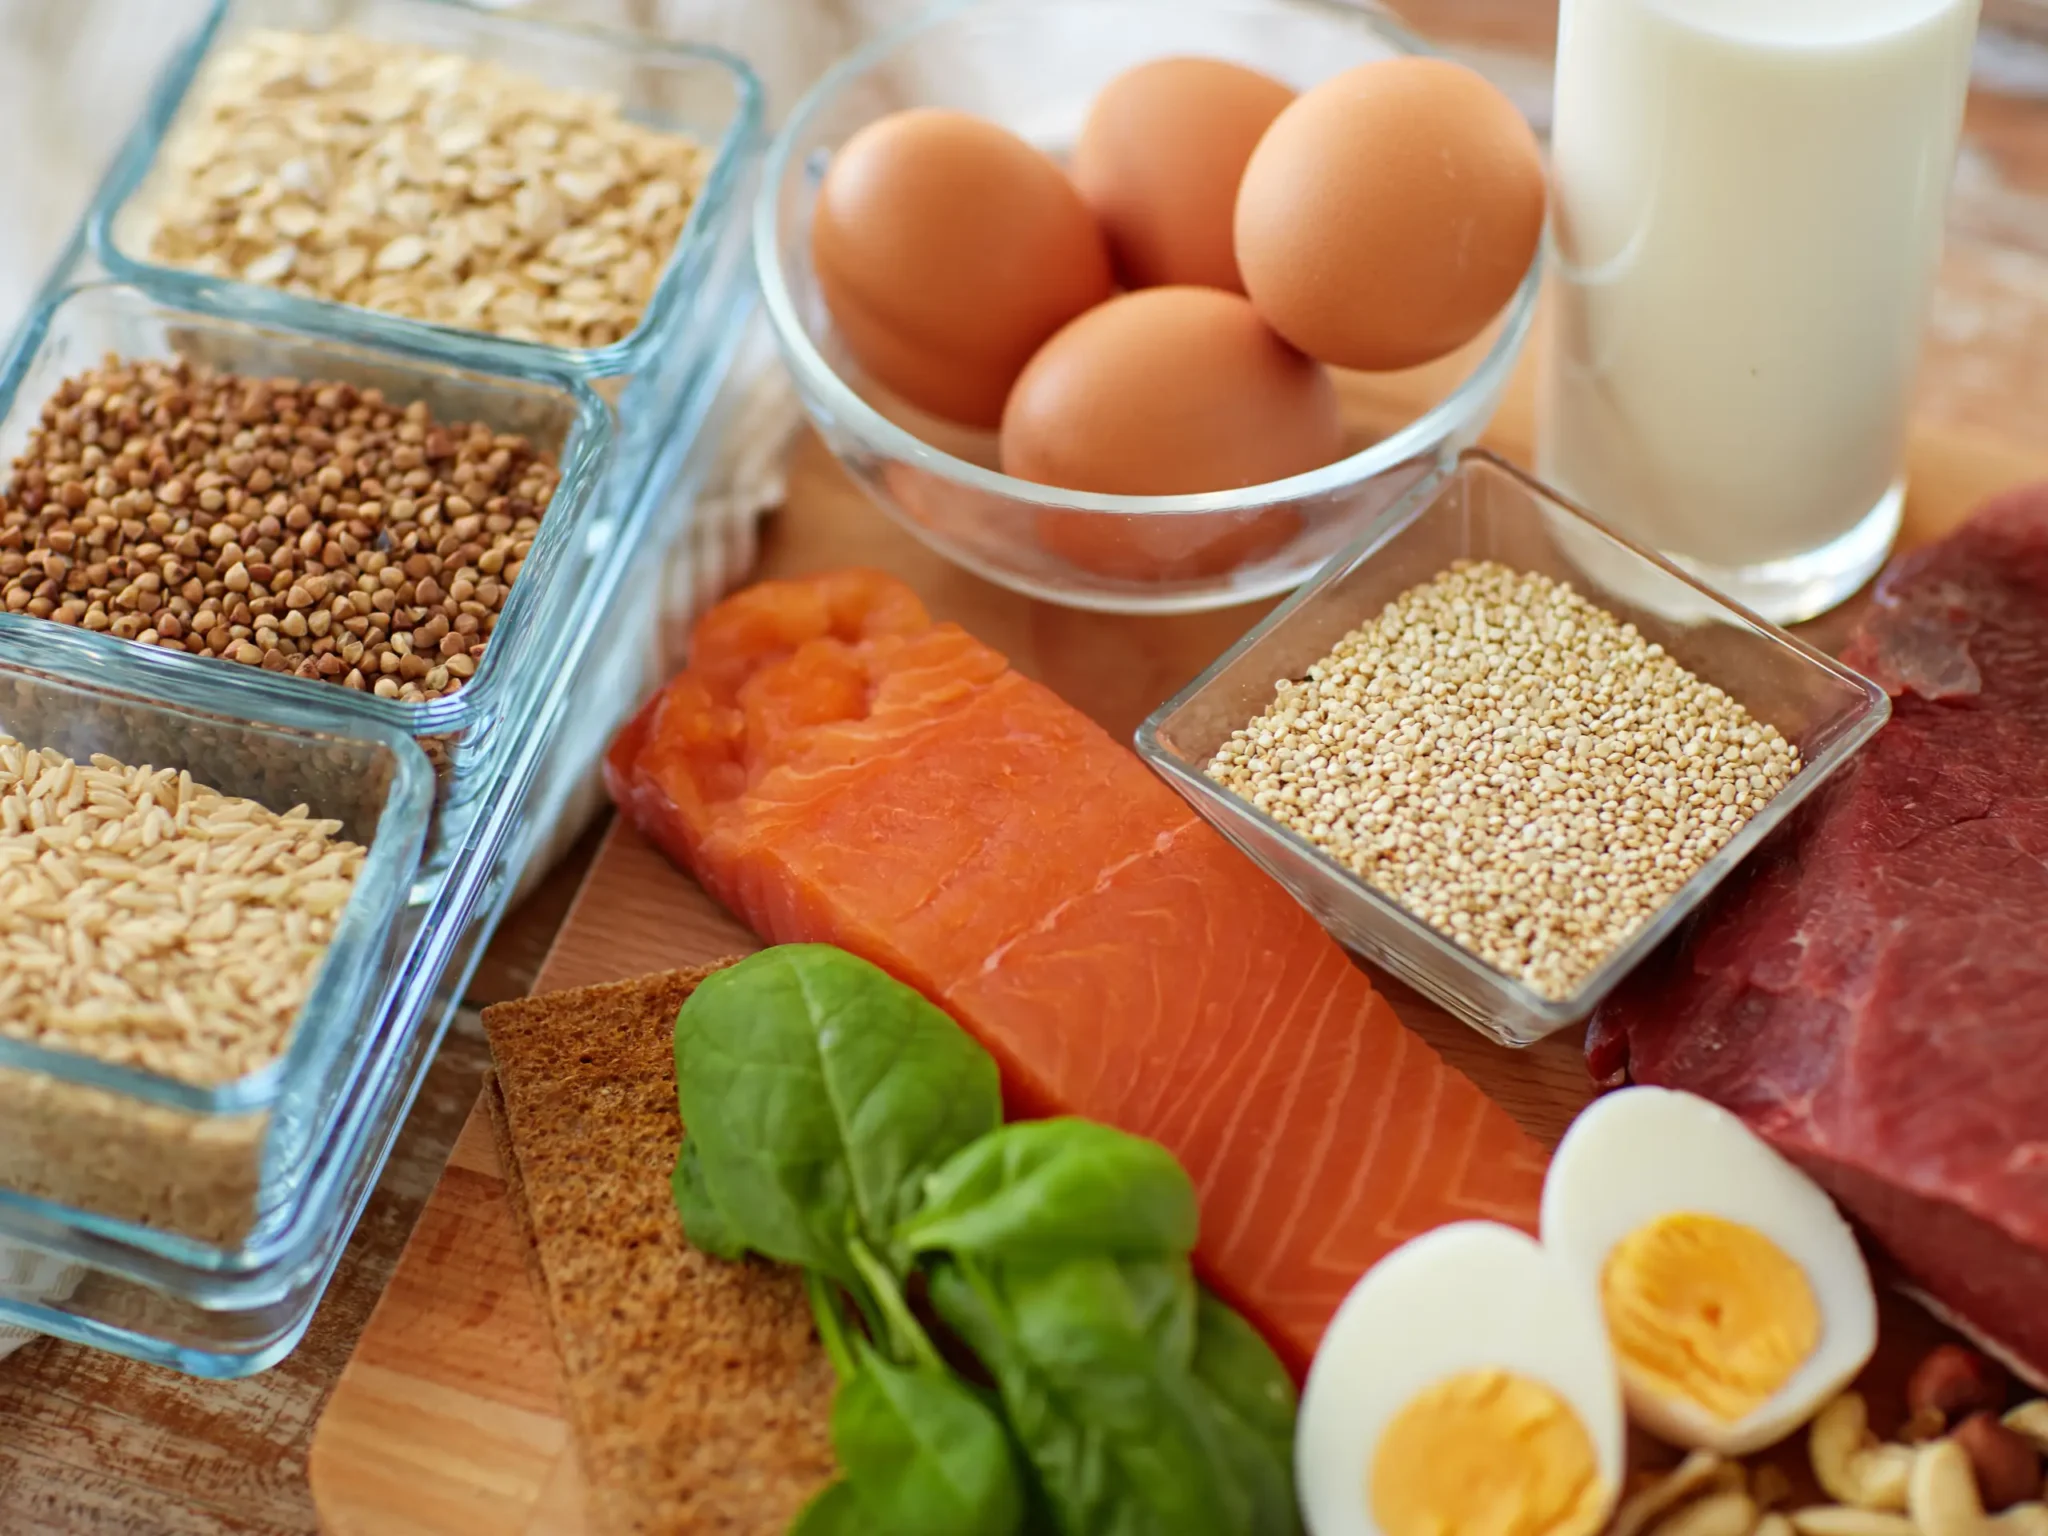 immagine di diversi alimenti che contengono proteine animali e vegetali, le proteine nell'alimentazione dello sportivo a livello agonistico